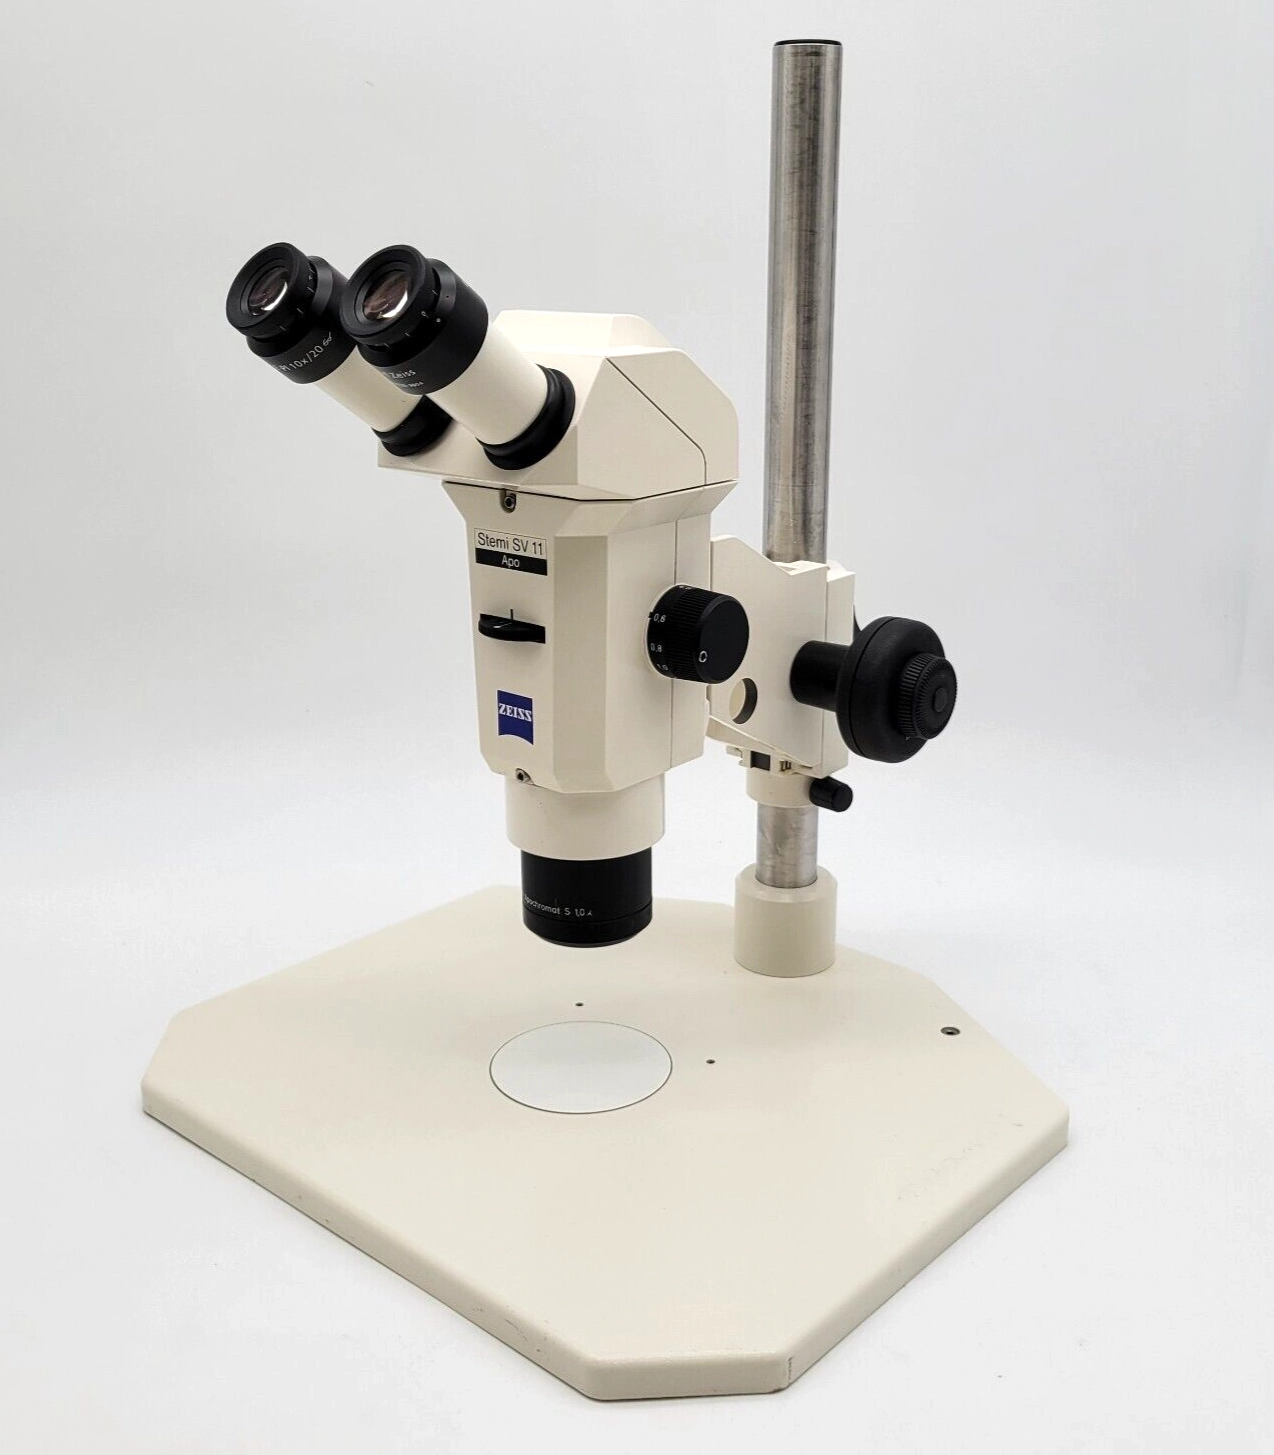 Zeiss Stereo Microscope Stemi SV 11 Apo with Plan Apochromat S 1.0x Objective